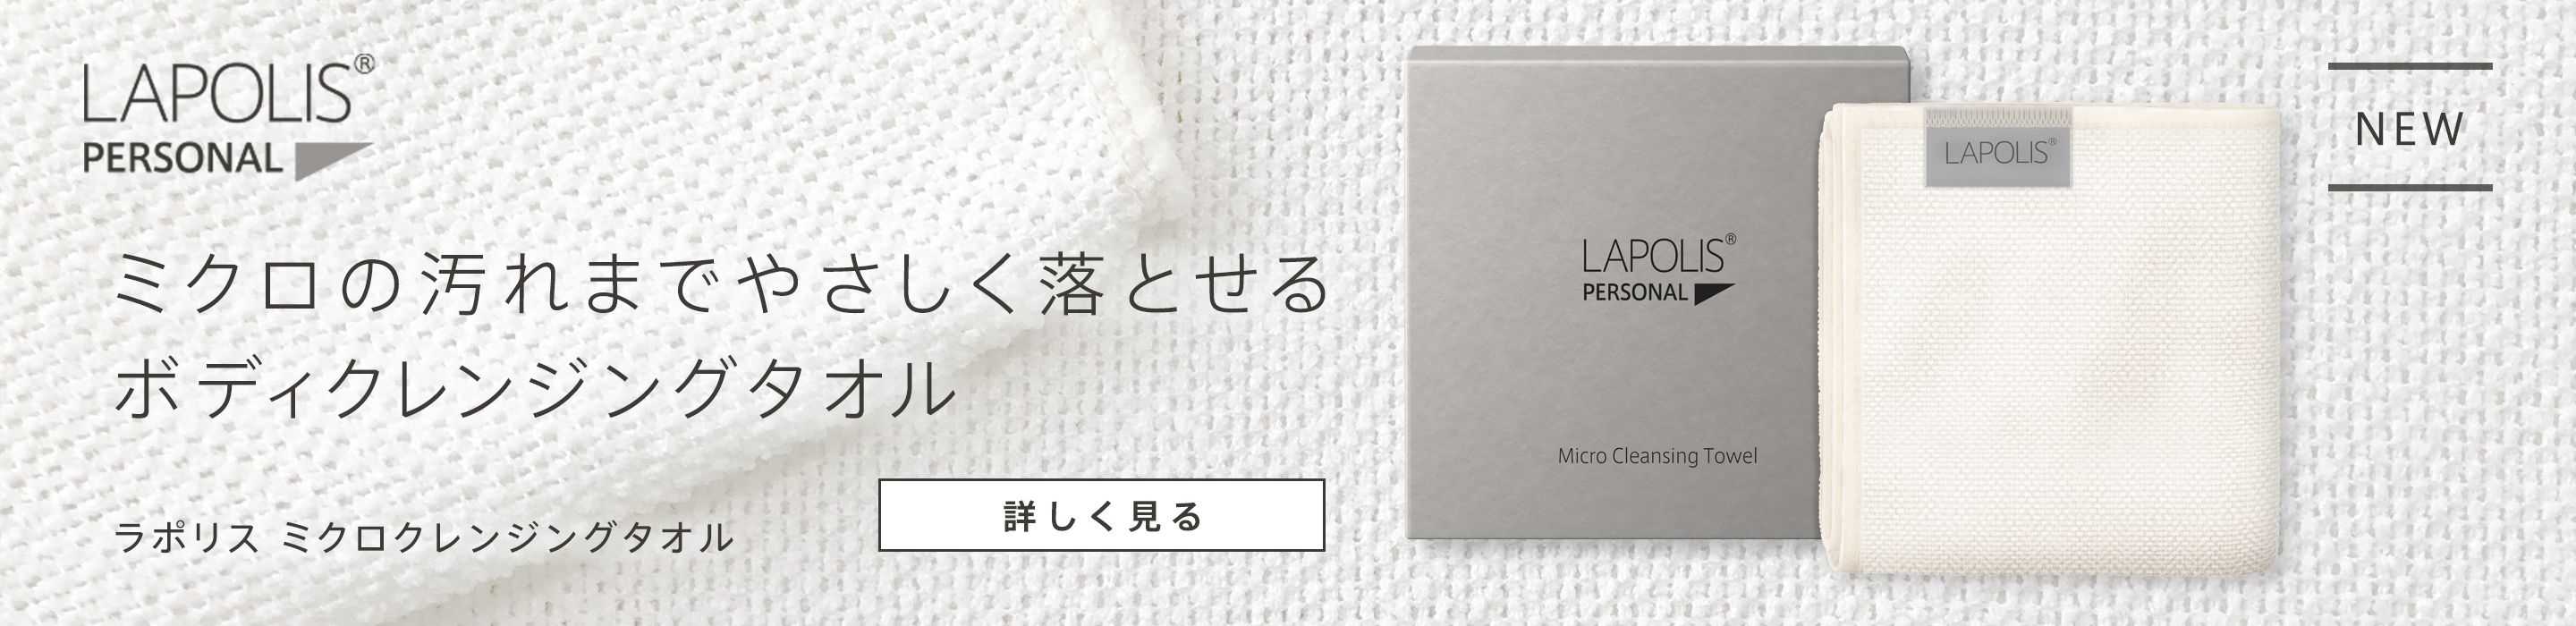 lapolis micro cleansing towel